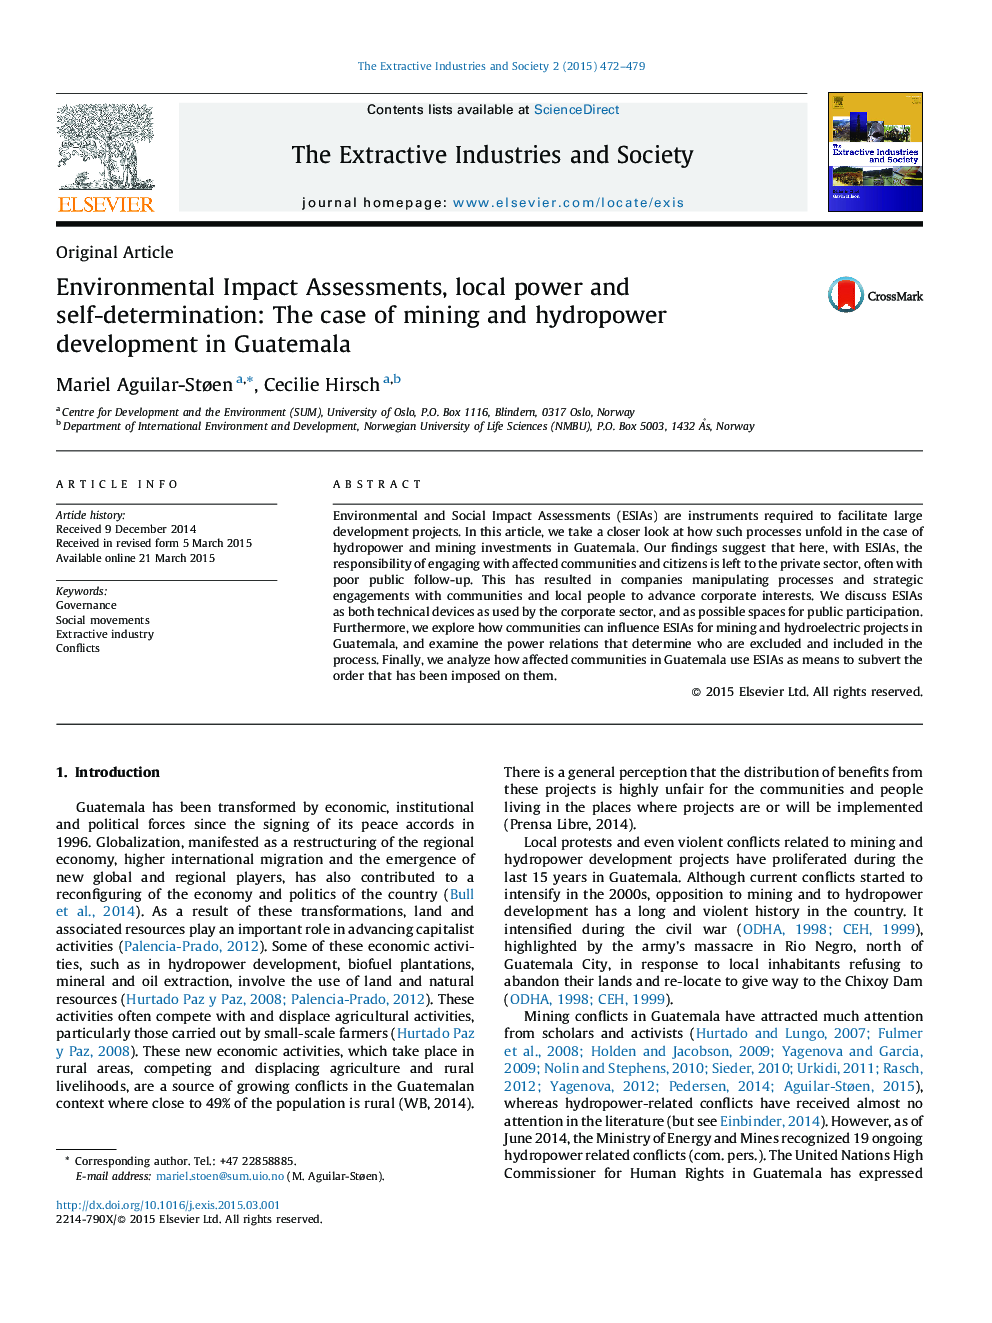 ارزیابی اثرات زیست محیطی، قدرت محلی و تعیین سرنوشت: مورد استخراج از معادن و توسعه برق آبی در گواتمالا